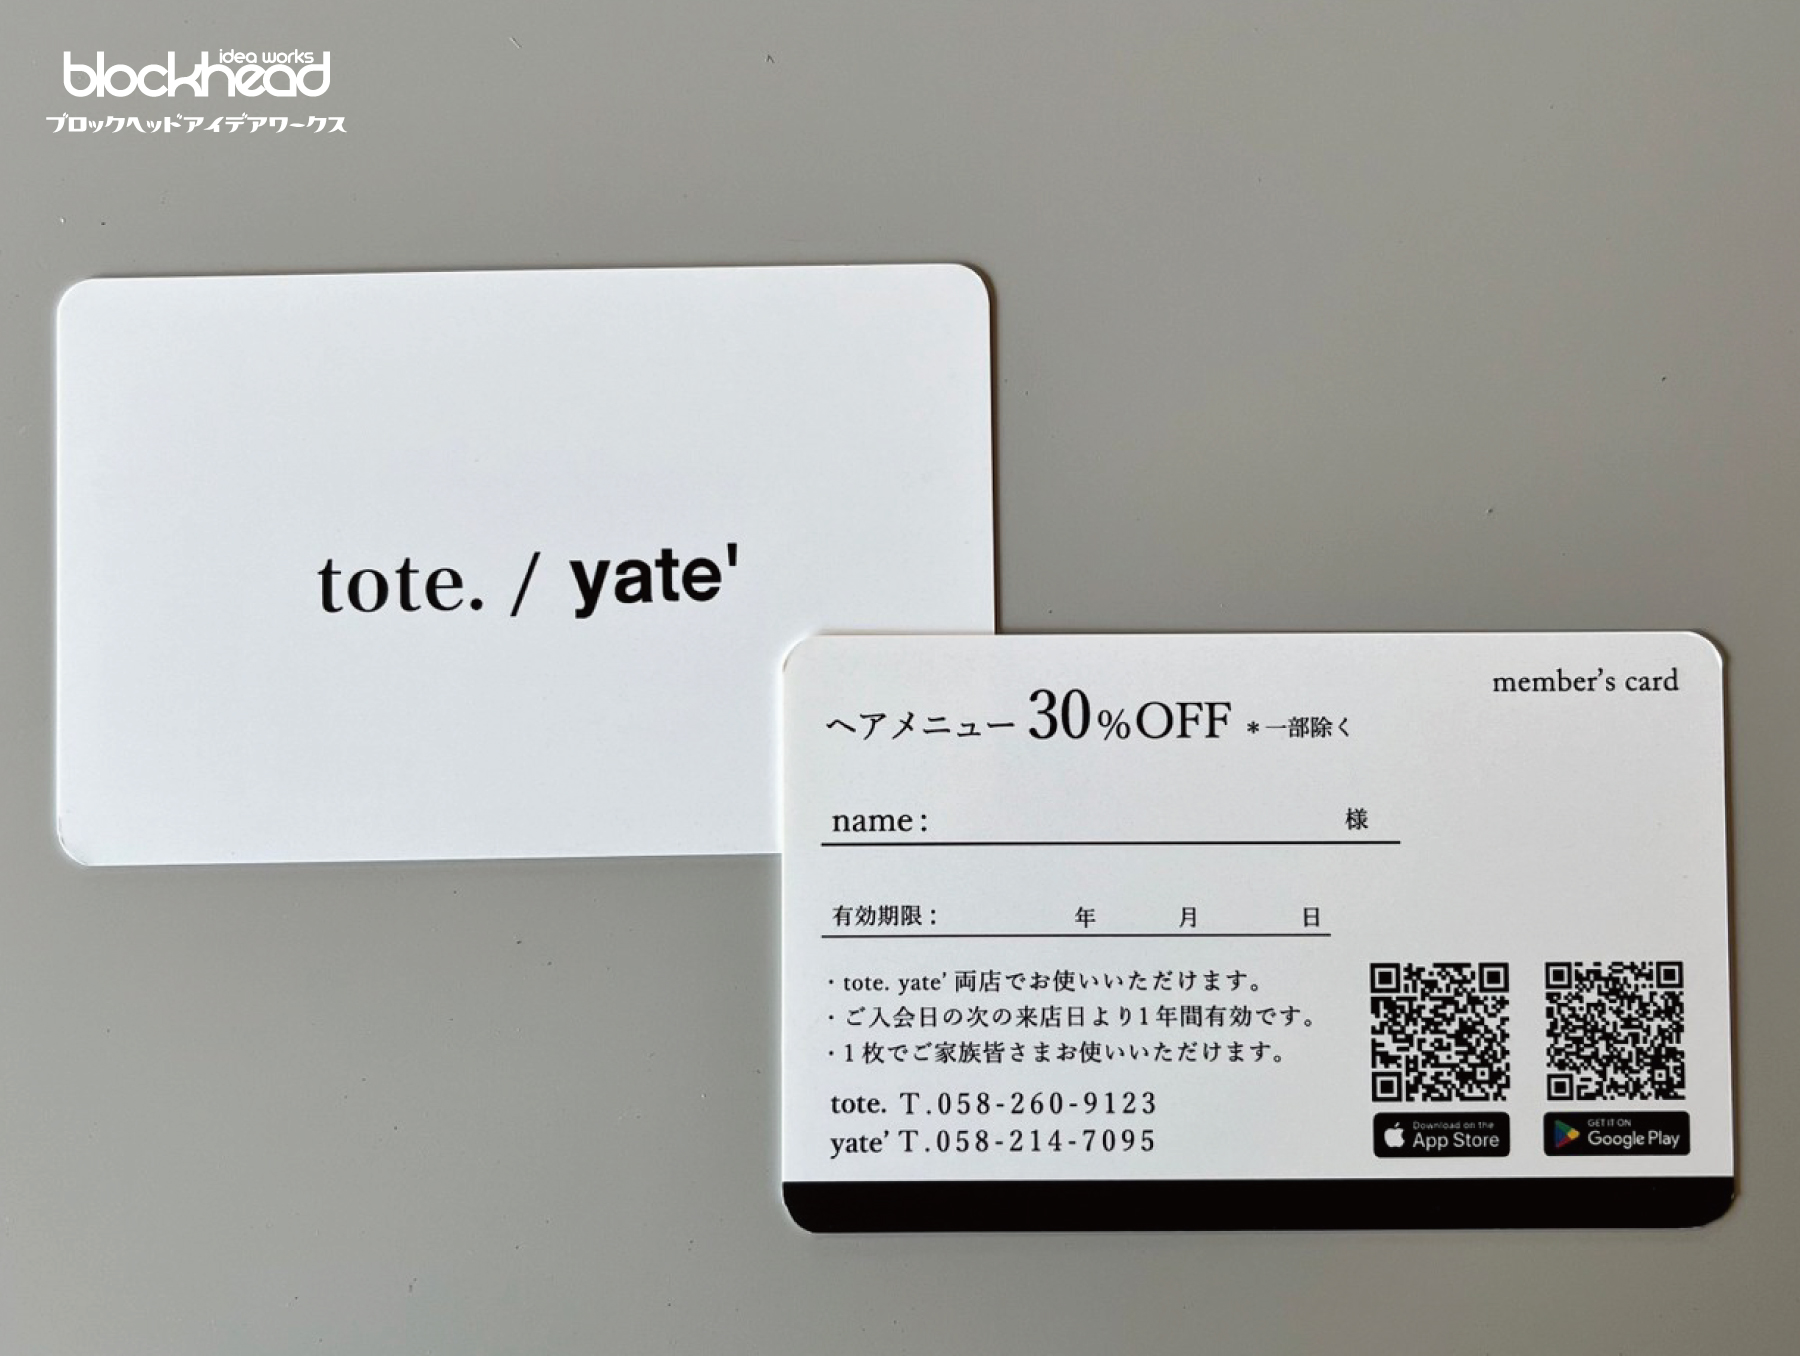 ショップカード,名刺,tote./yate'のショップカード